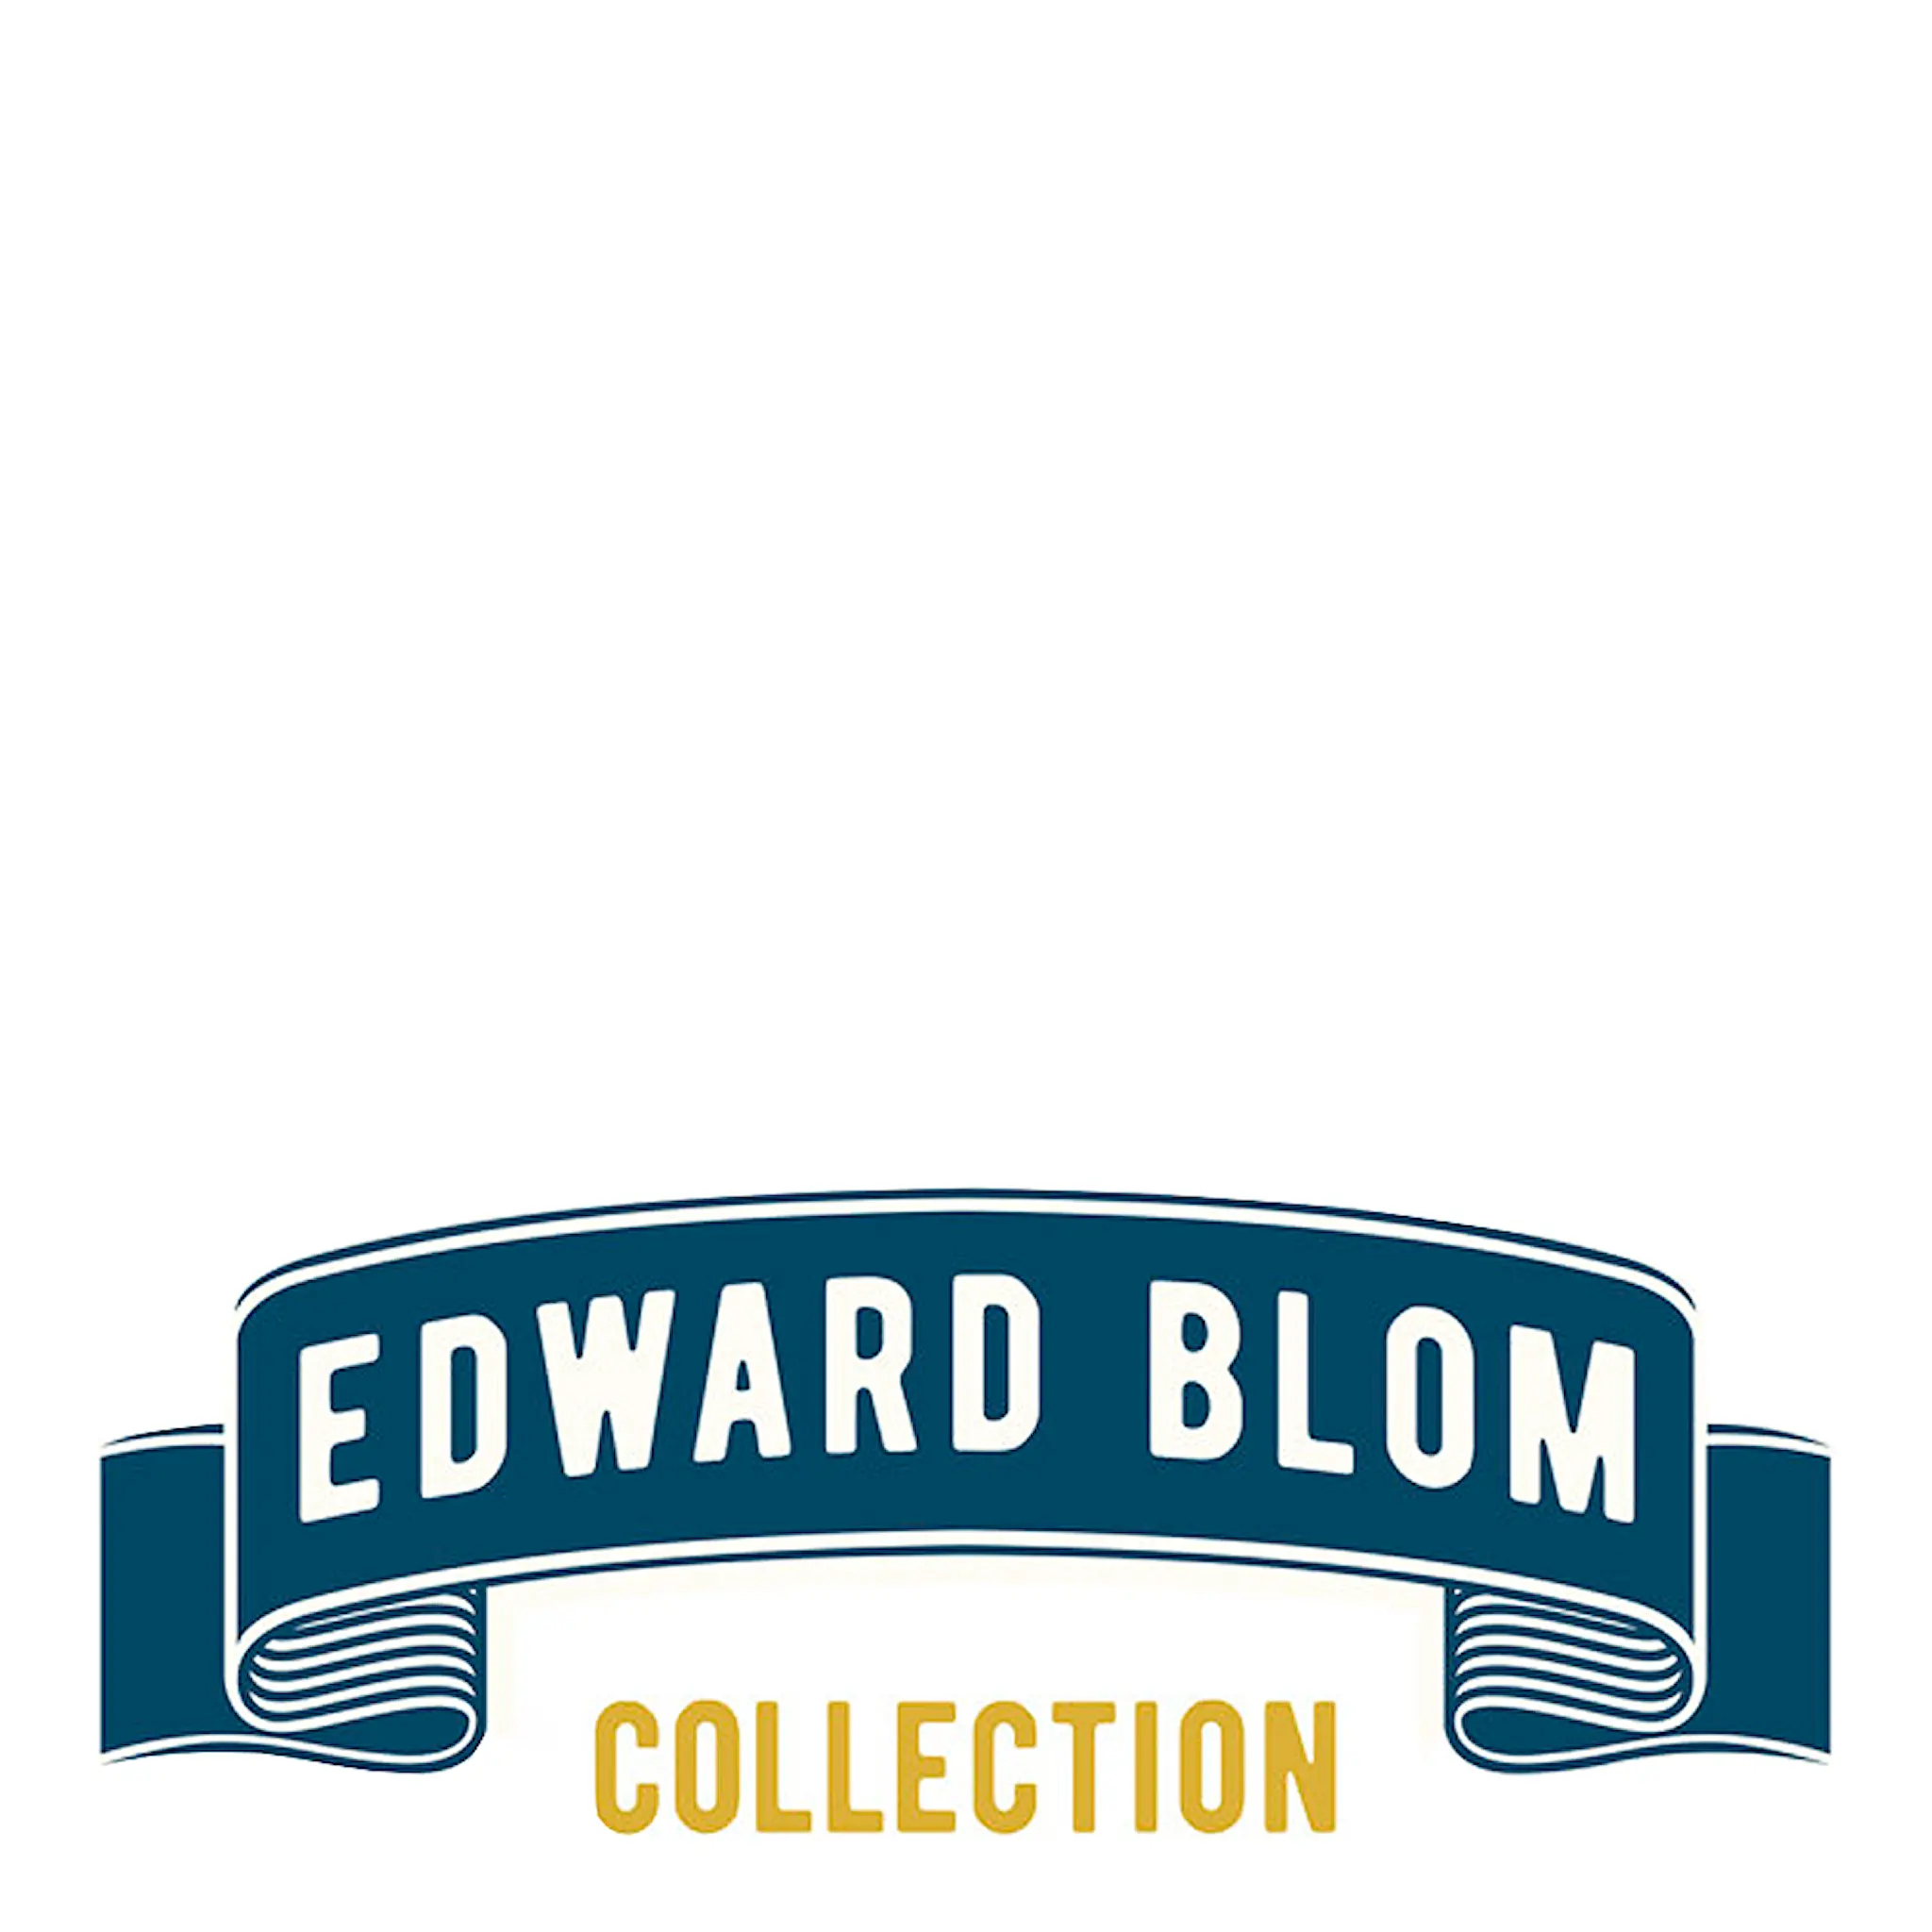 Edward Blom Collection ølglass No 2: Jag gillar fett